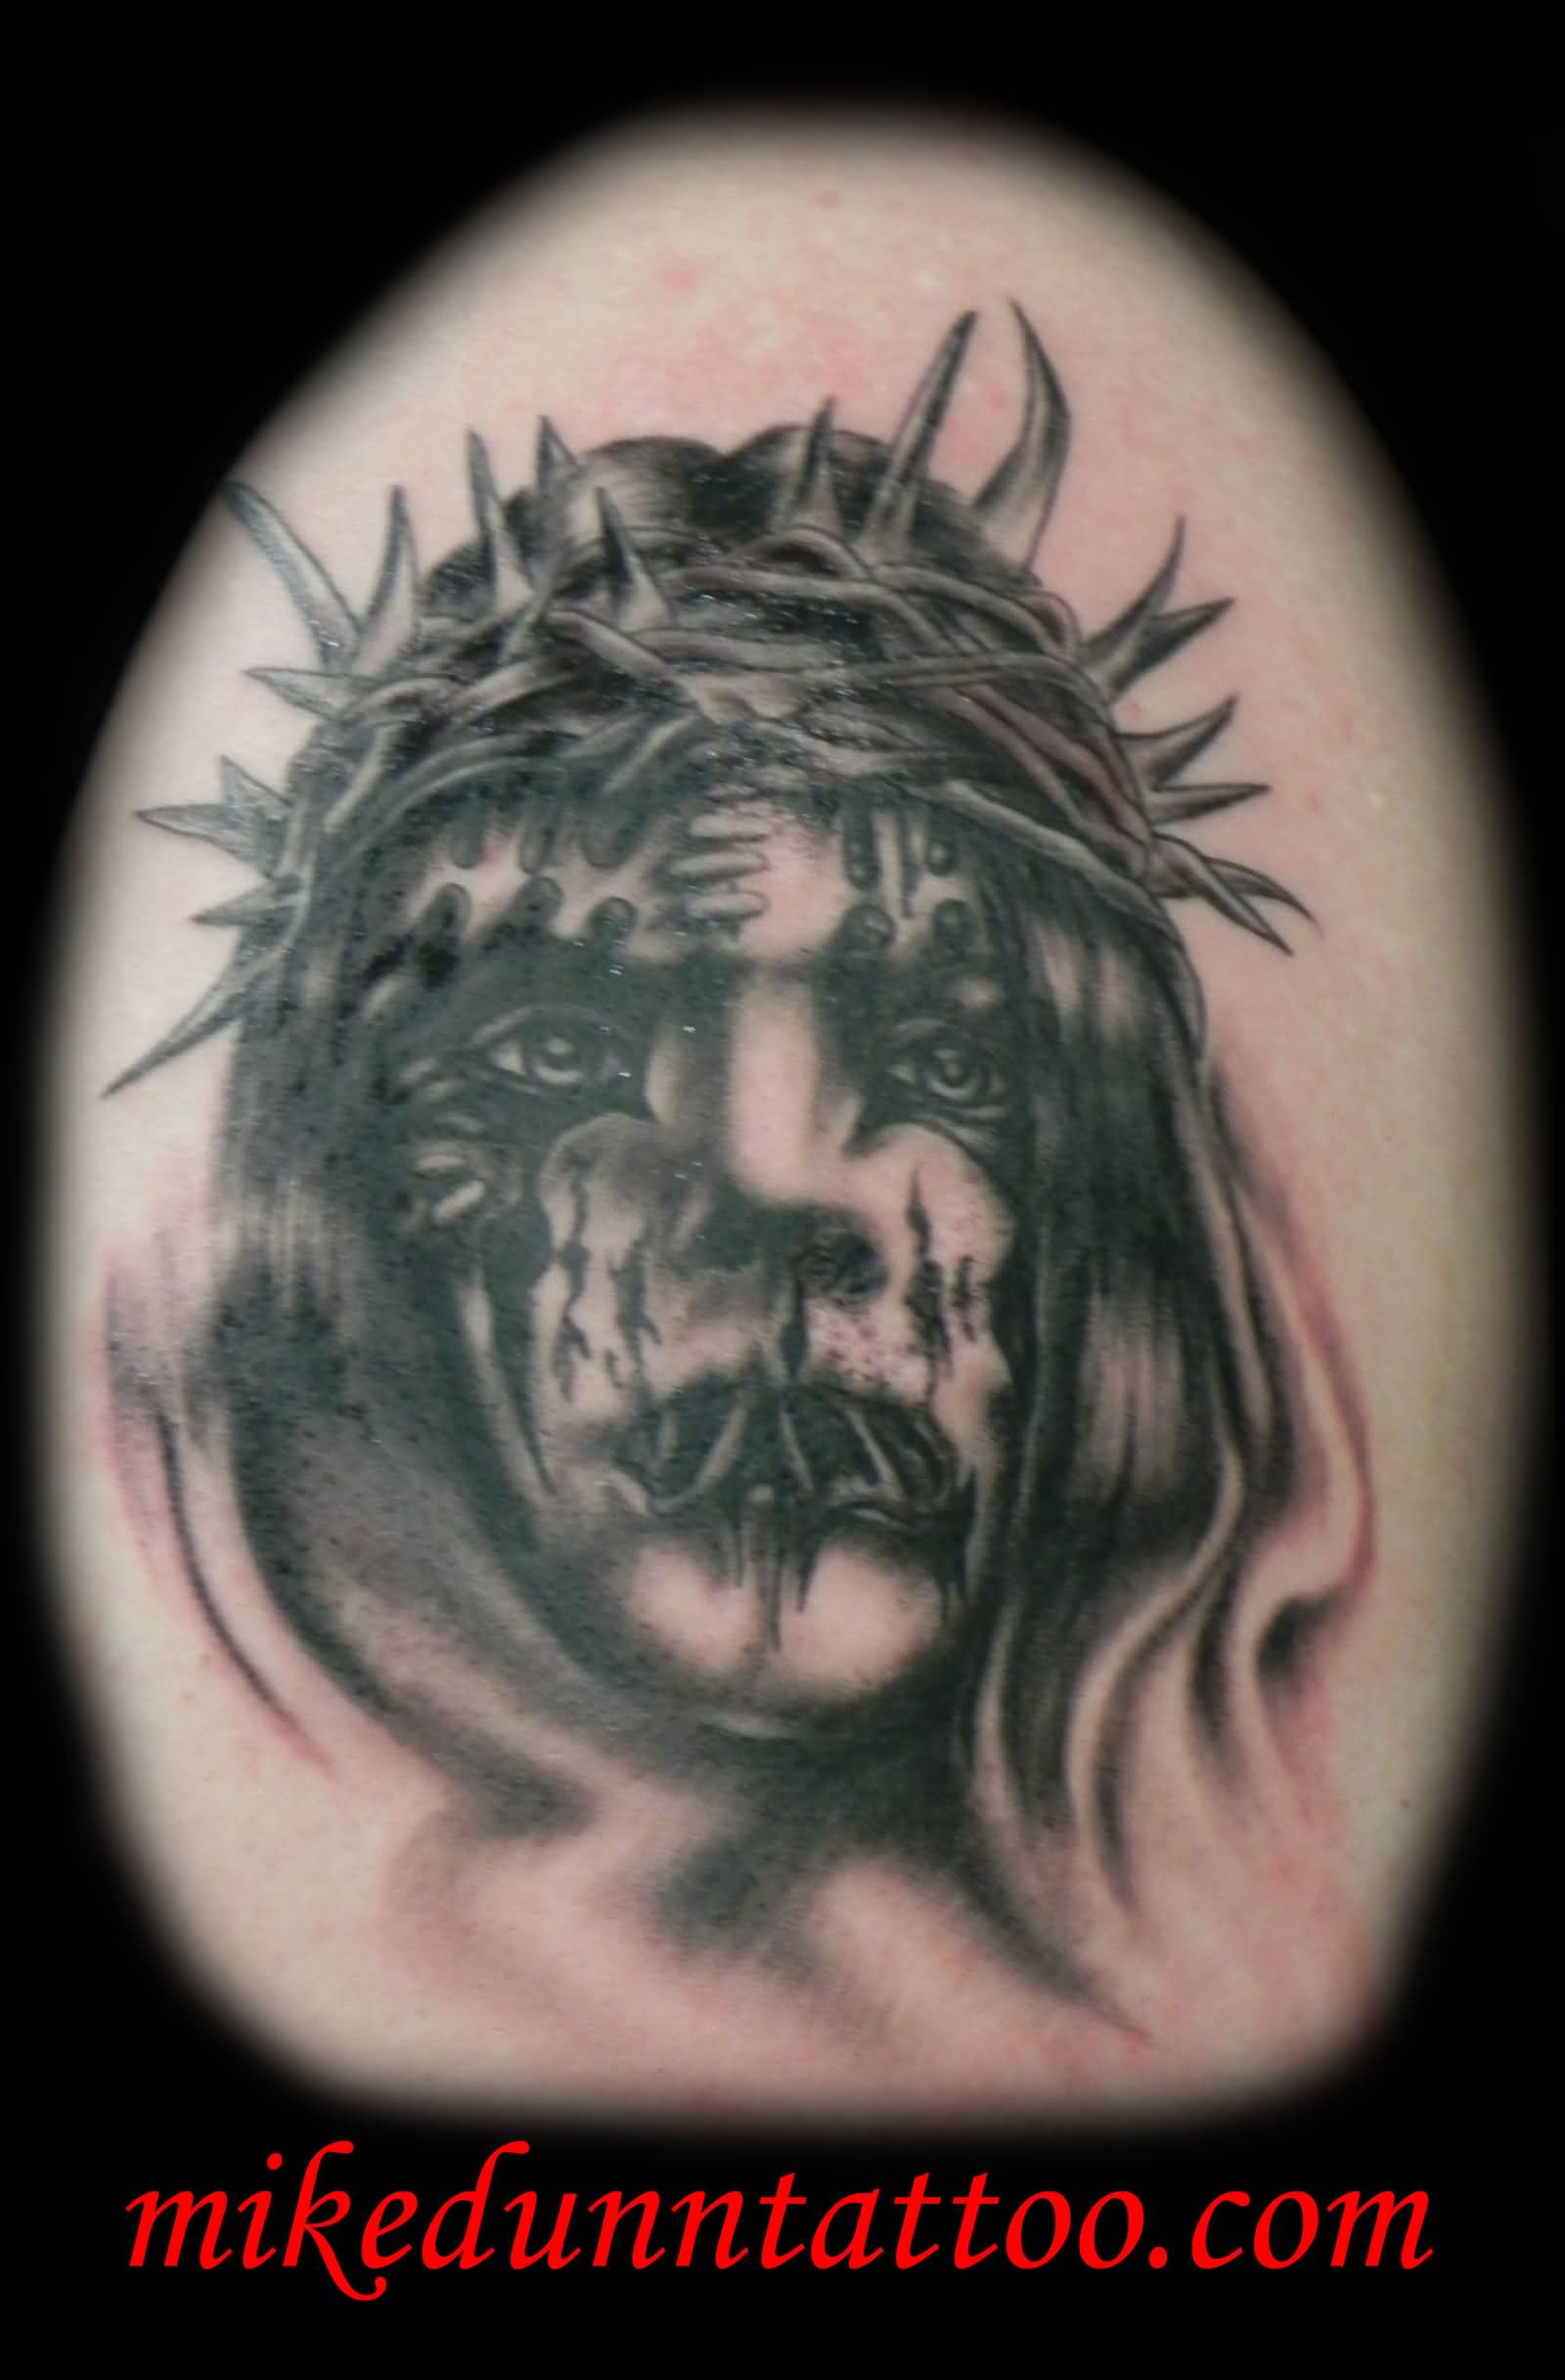 Wonderful Black And White Slipknot Member Face Tattoo